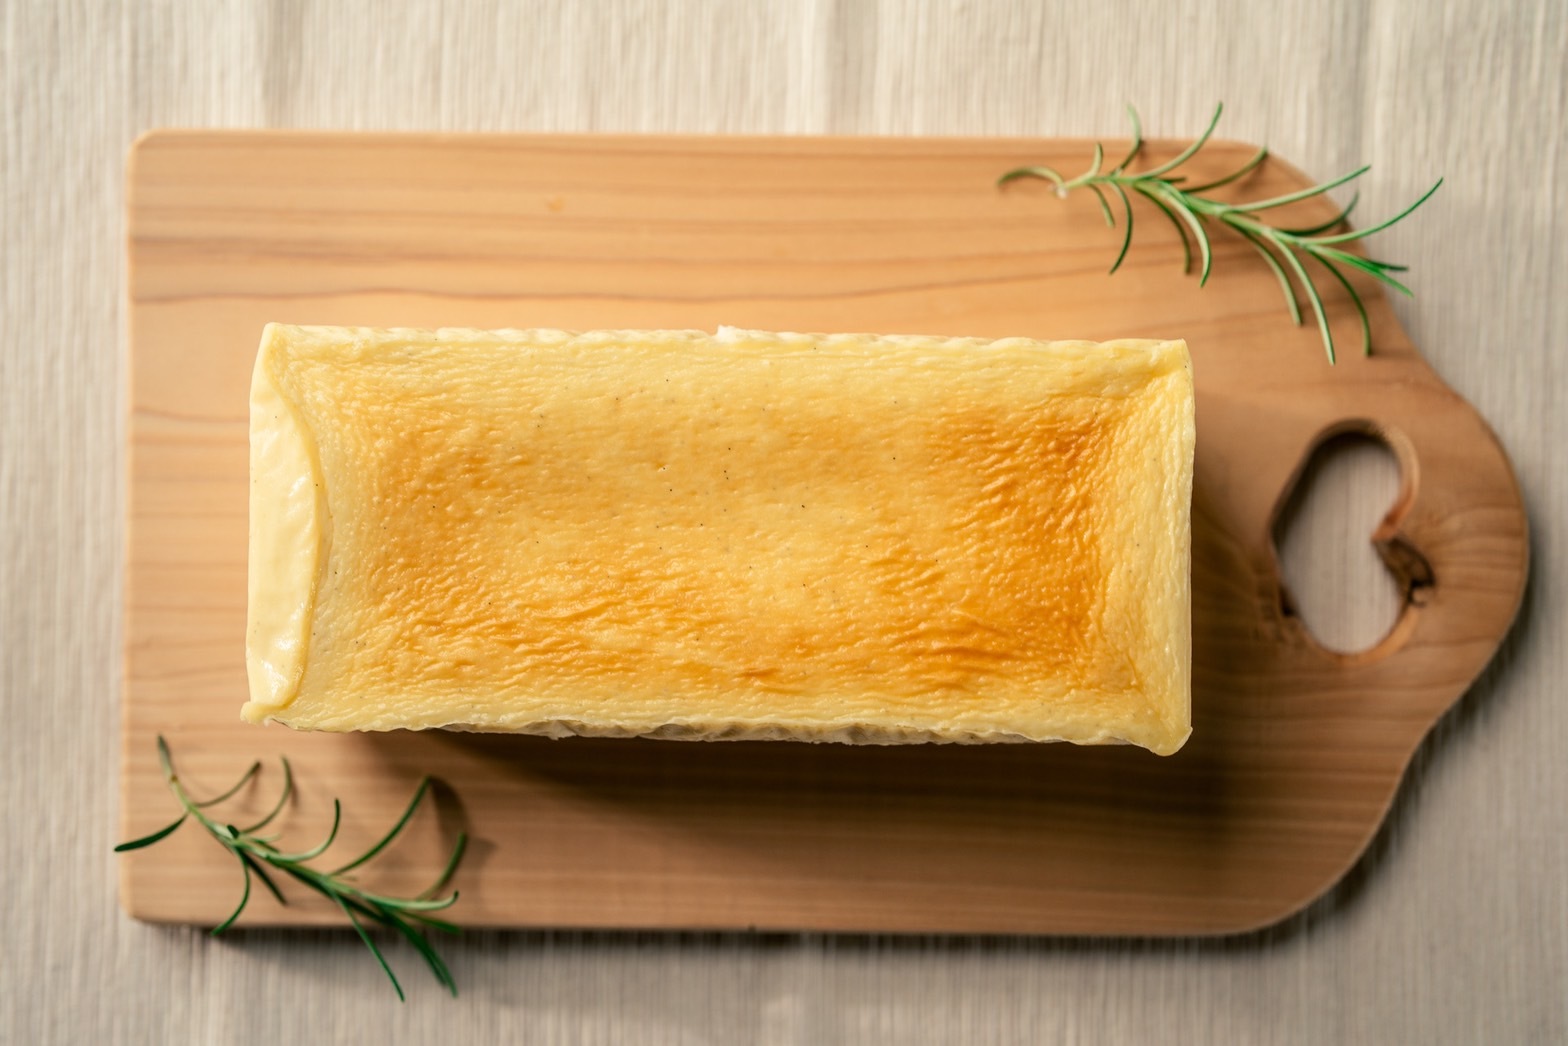 三重県伊勢市のチーズケーキ専門店 伊勢スイーツラボRingが
『チーズテリーヌ』を6月12日より楽天市場で販売開始